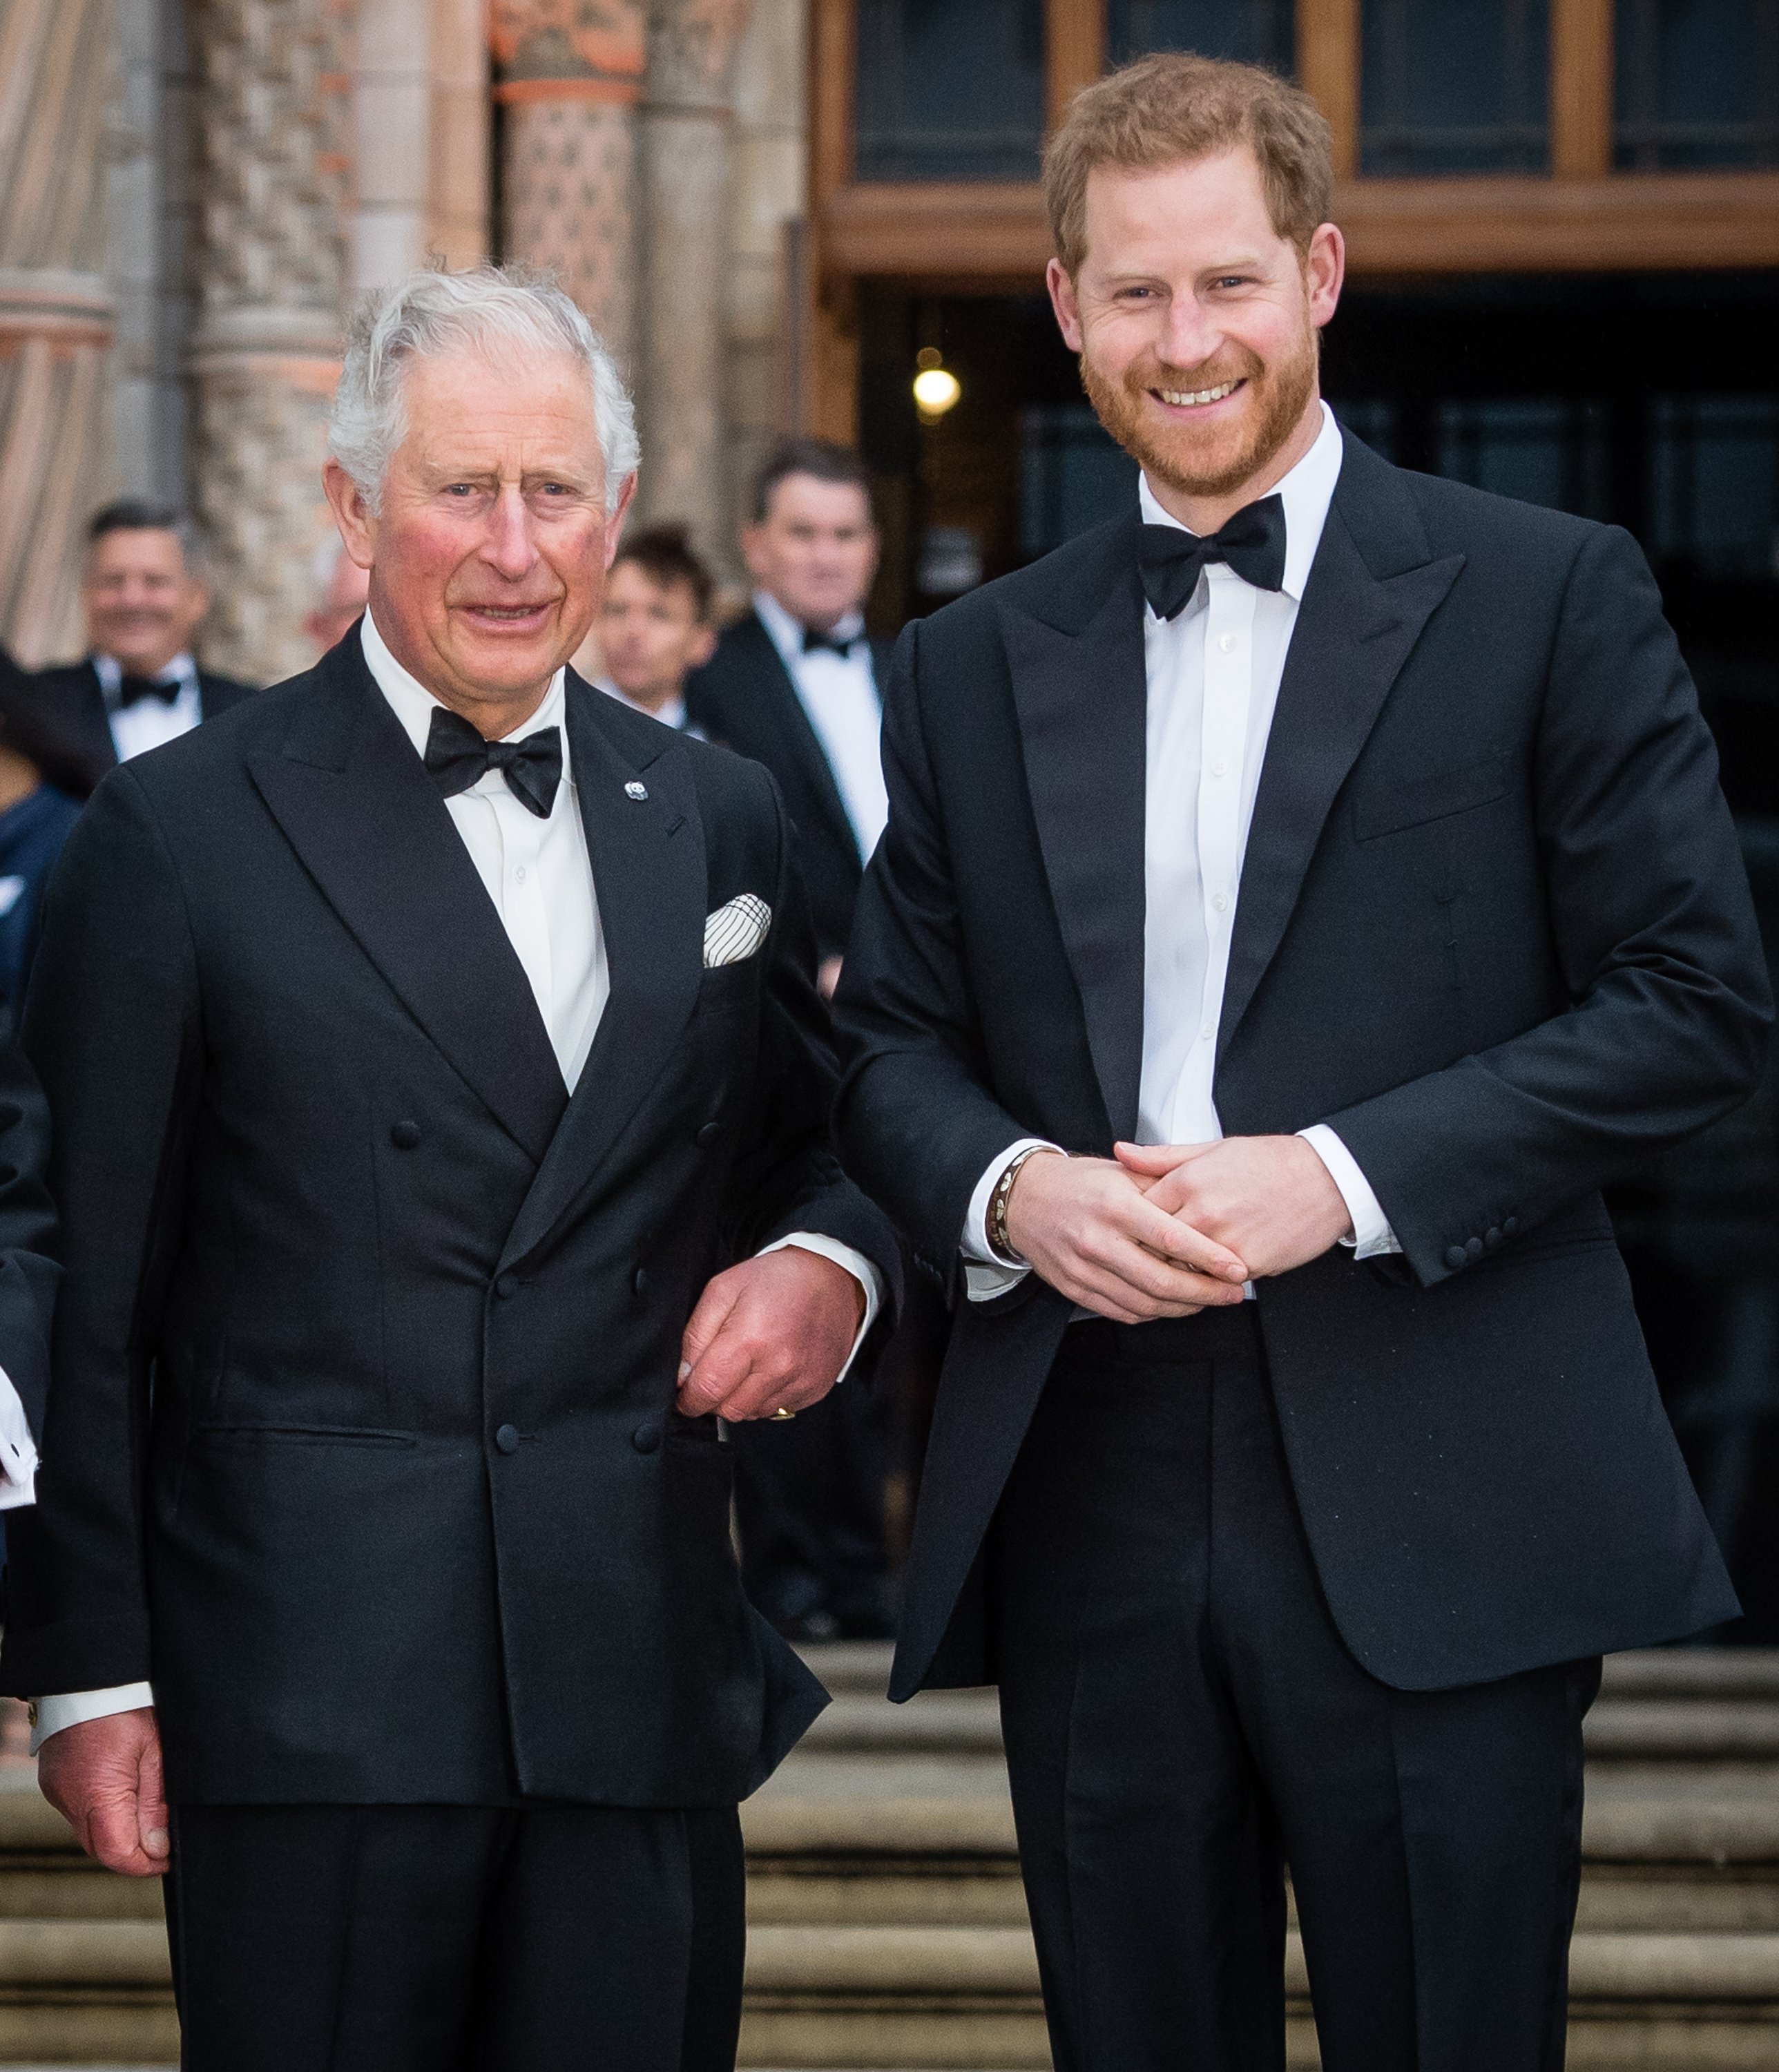 Le roi Charles III et le prince Harry, duc de Sussex, lors de la première mondiale de "Notre planète" au Musée d'histoire naturelle, le 04 avril 2019, à Londres, en Angleterre. | Source : Getty Images